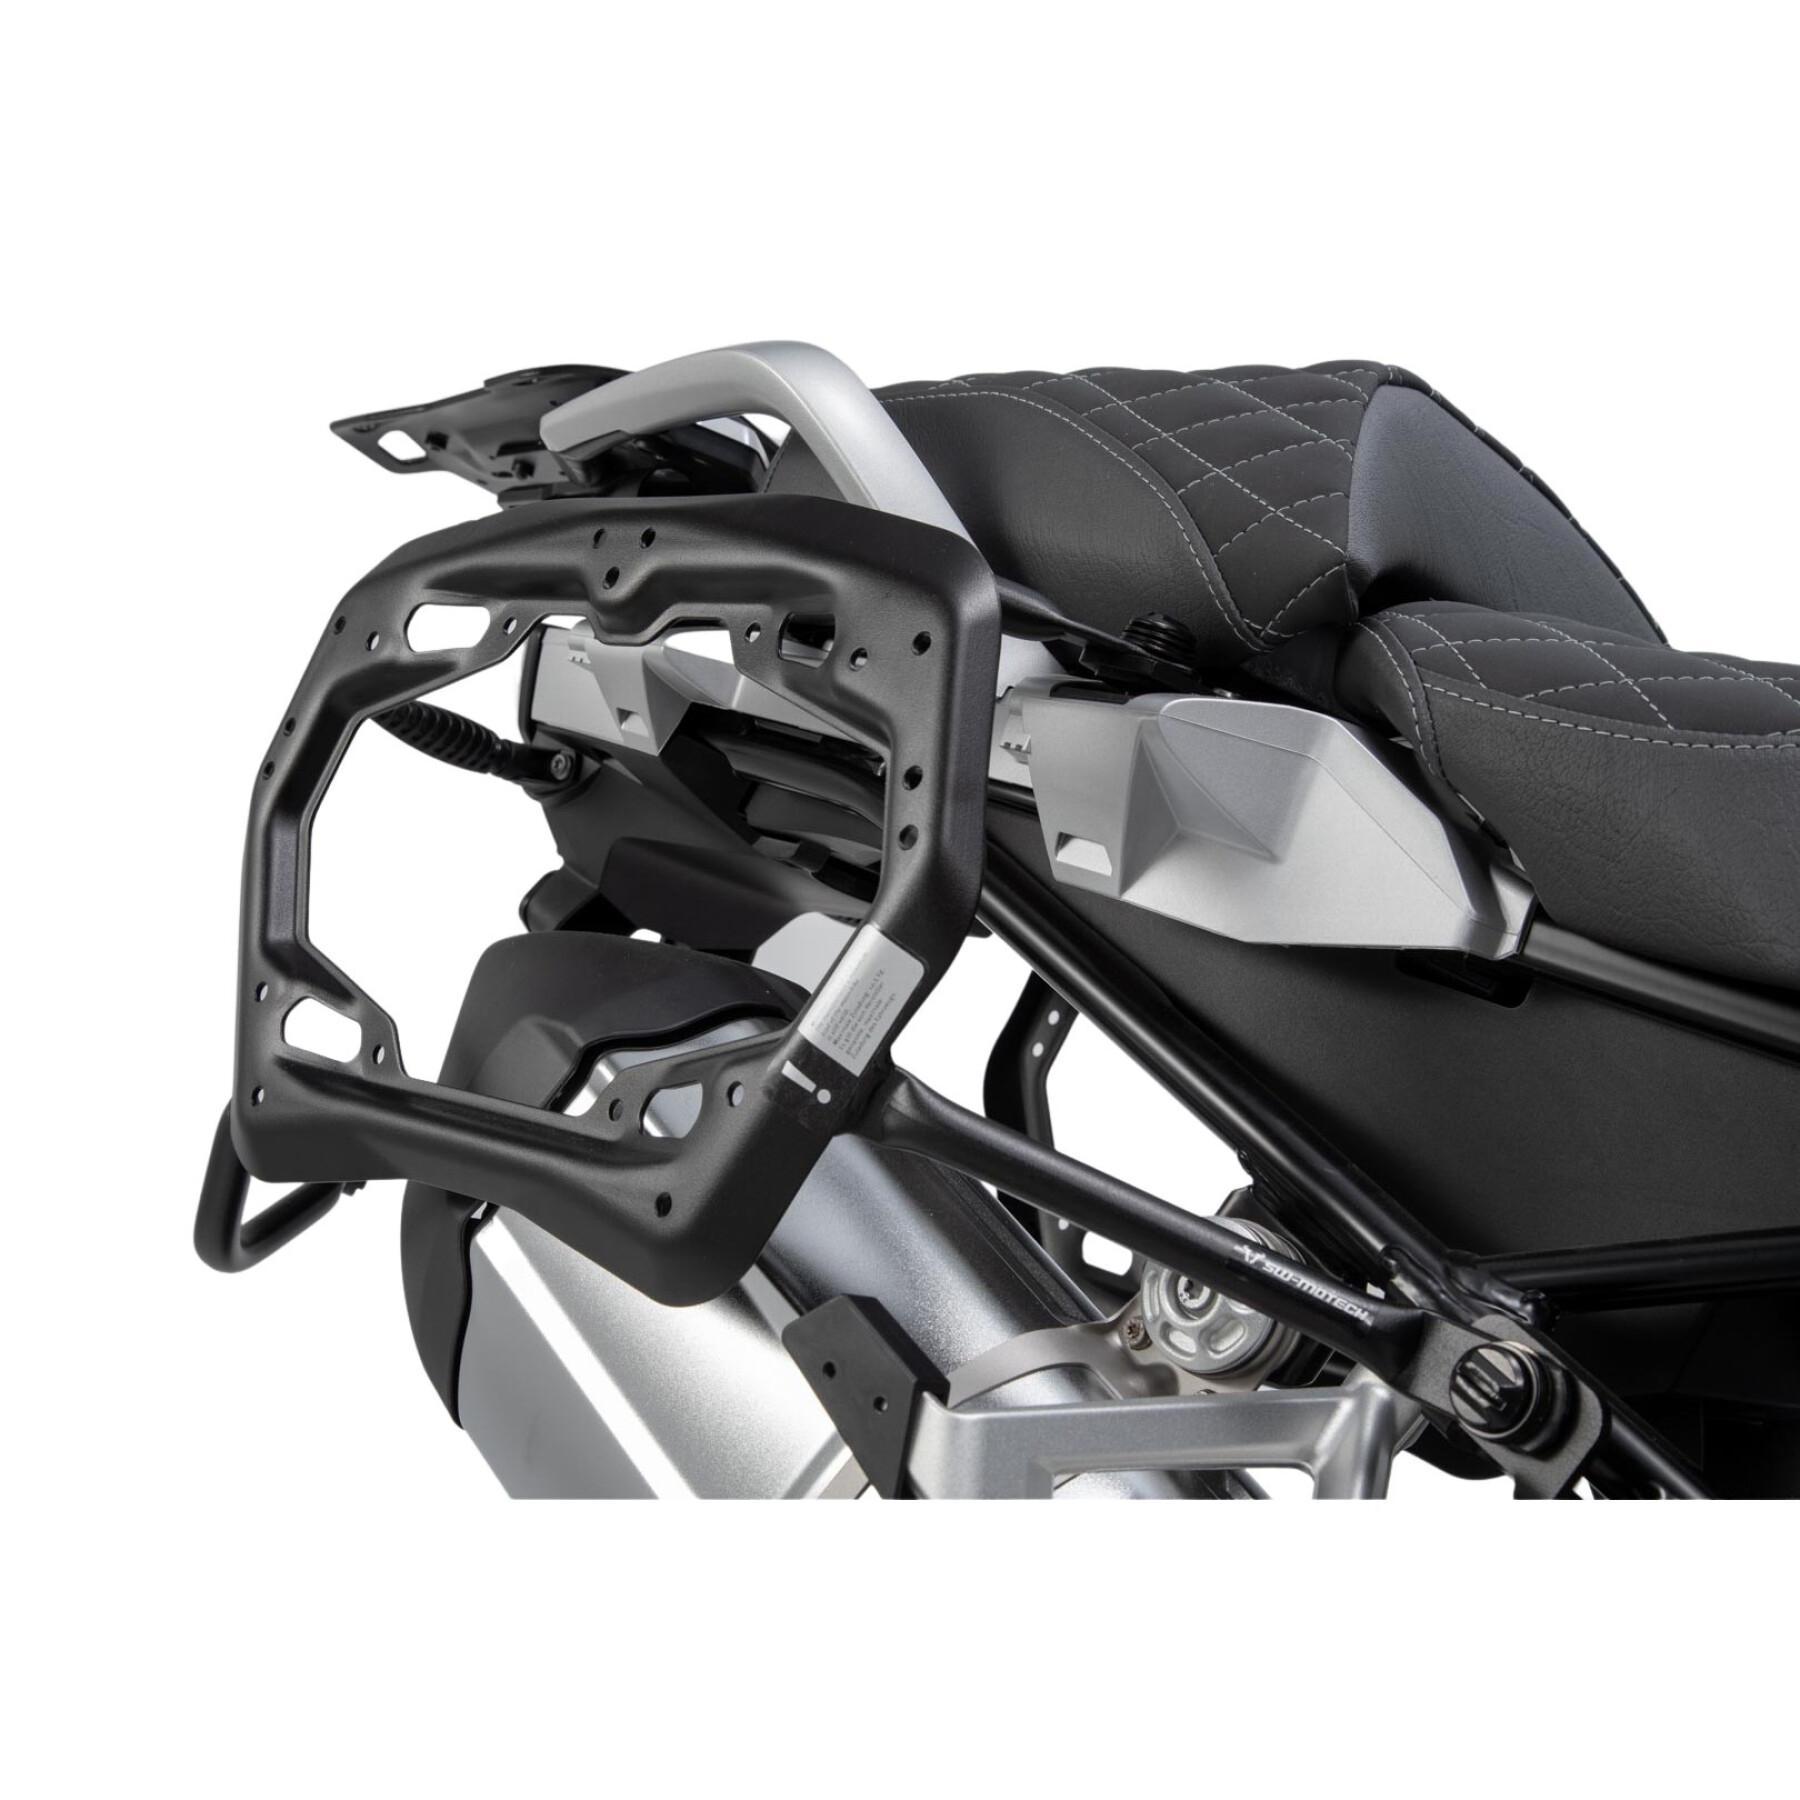 Wspornik kufra bocznego motocykla Sw-Motech Pro. Bmw R1200Gs (13-), R1250Gs (18-)